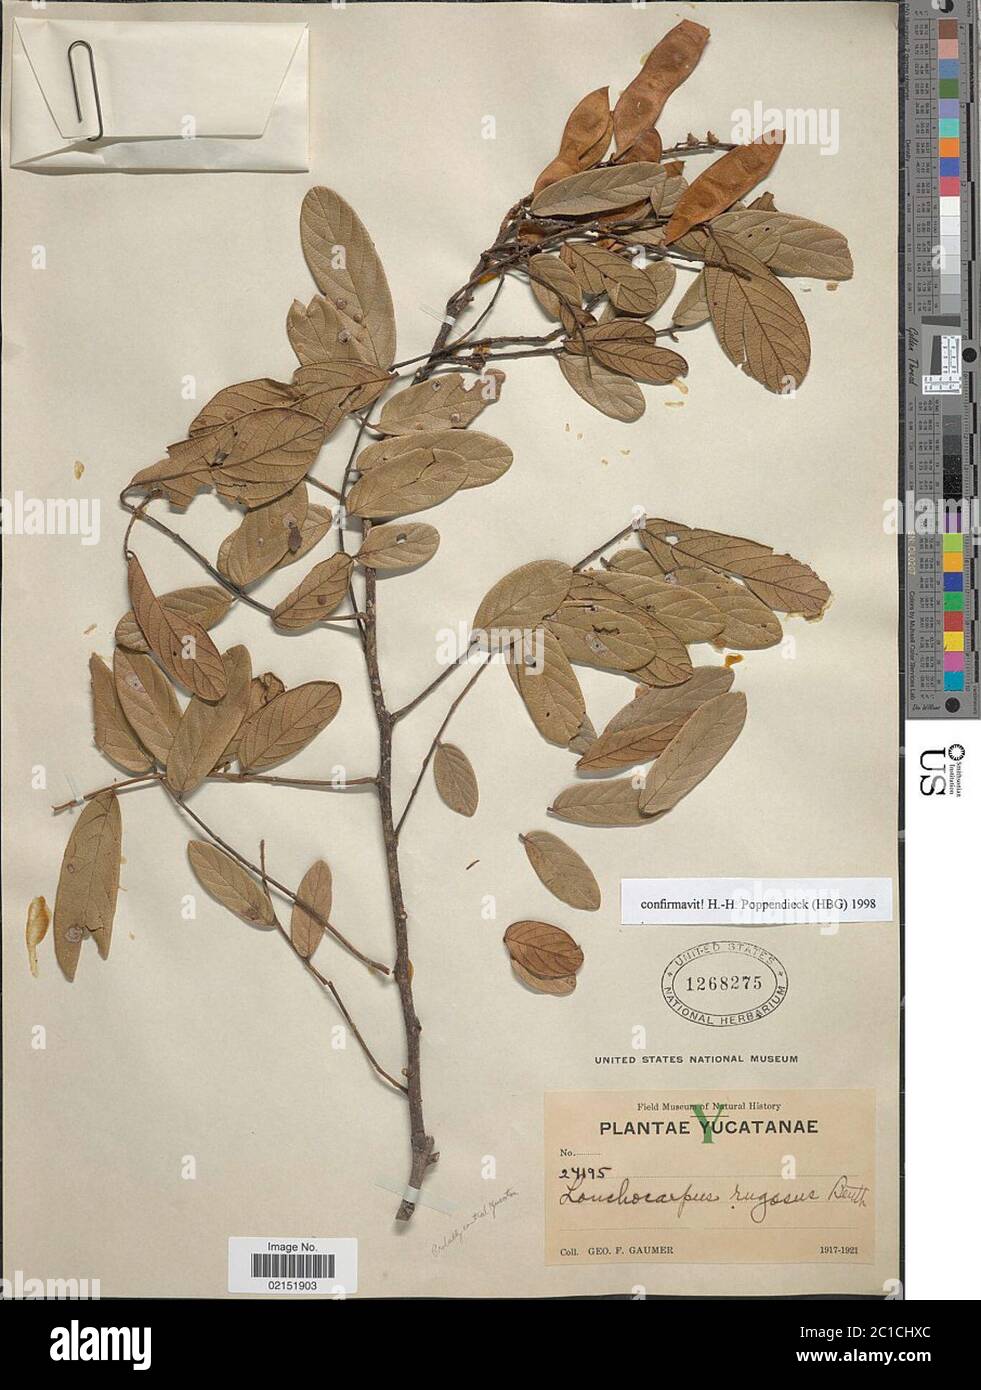 Lonchocarpus rugosus Benth Lonchocarpus rugosus Benth. Stock Photo